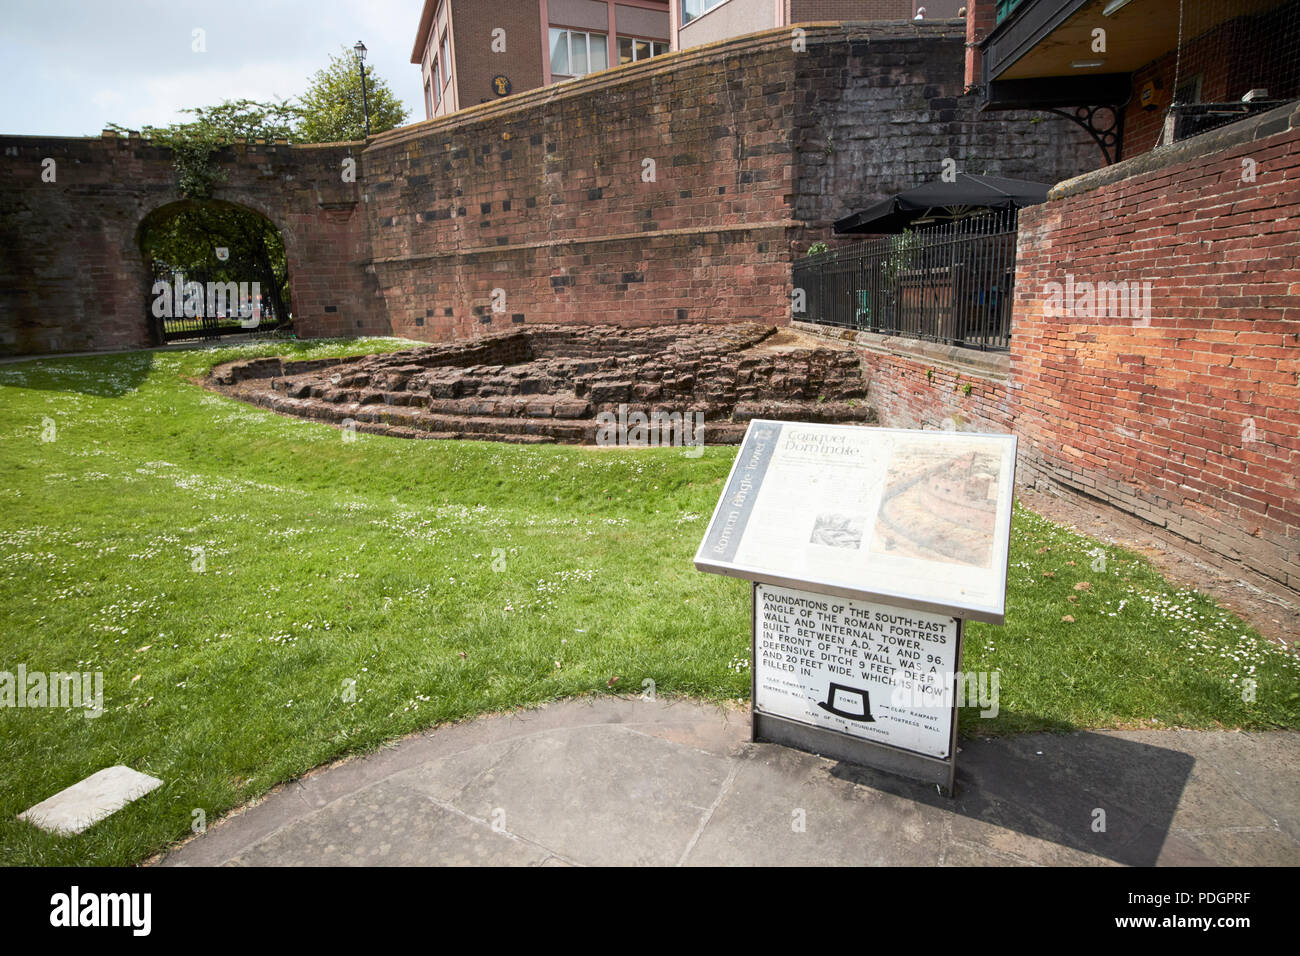 Les murs de la ville de Chester romaine originale montrant les murs et les fondations de la tour d'angle cheshire england uk Banque D'Images